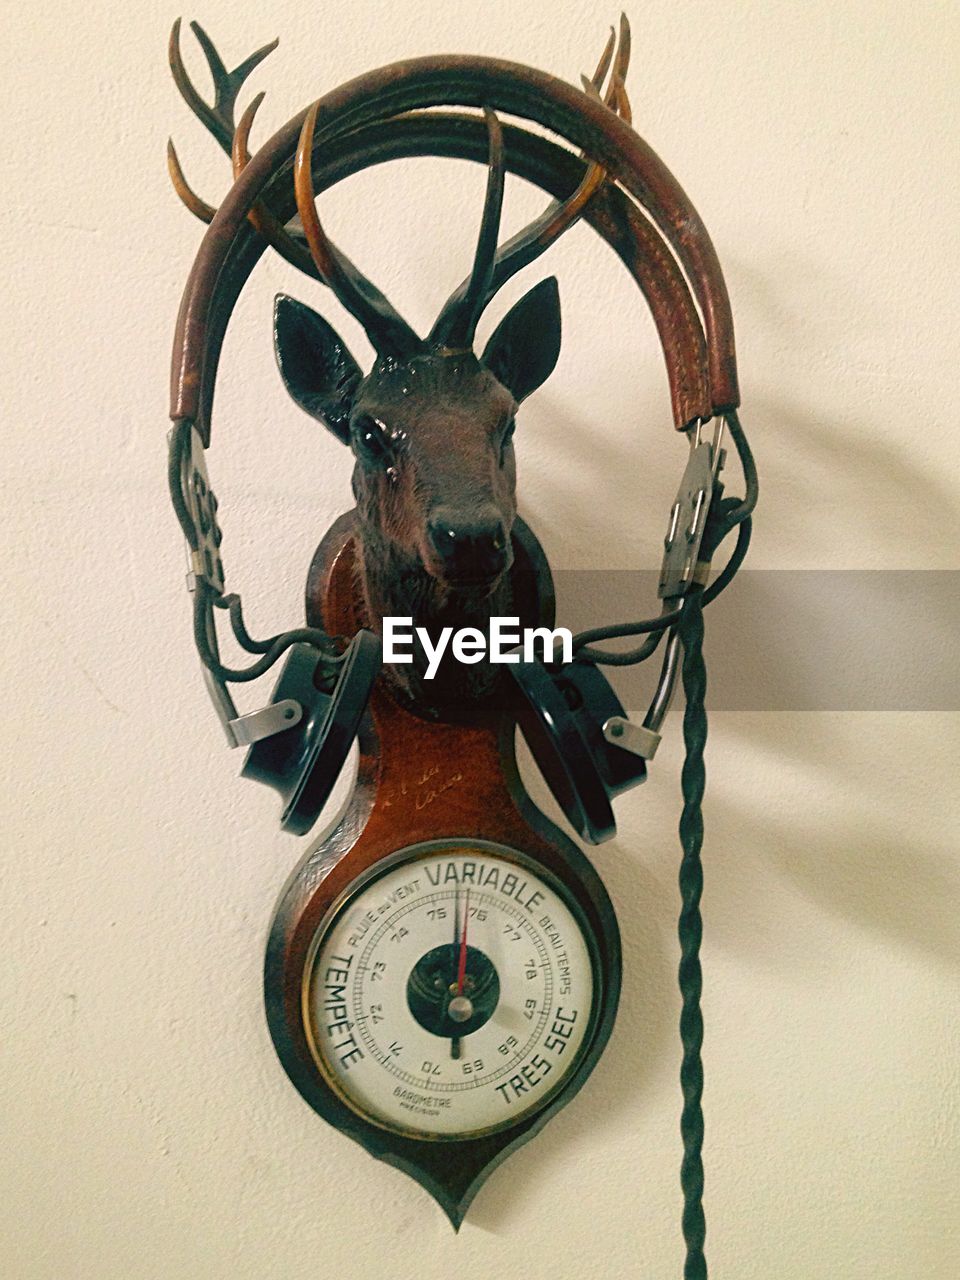 Headphones on vintage meter with deer statue against wall